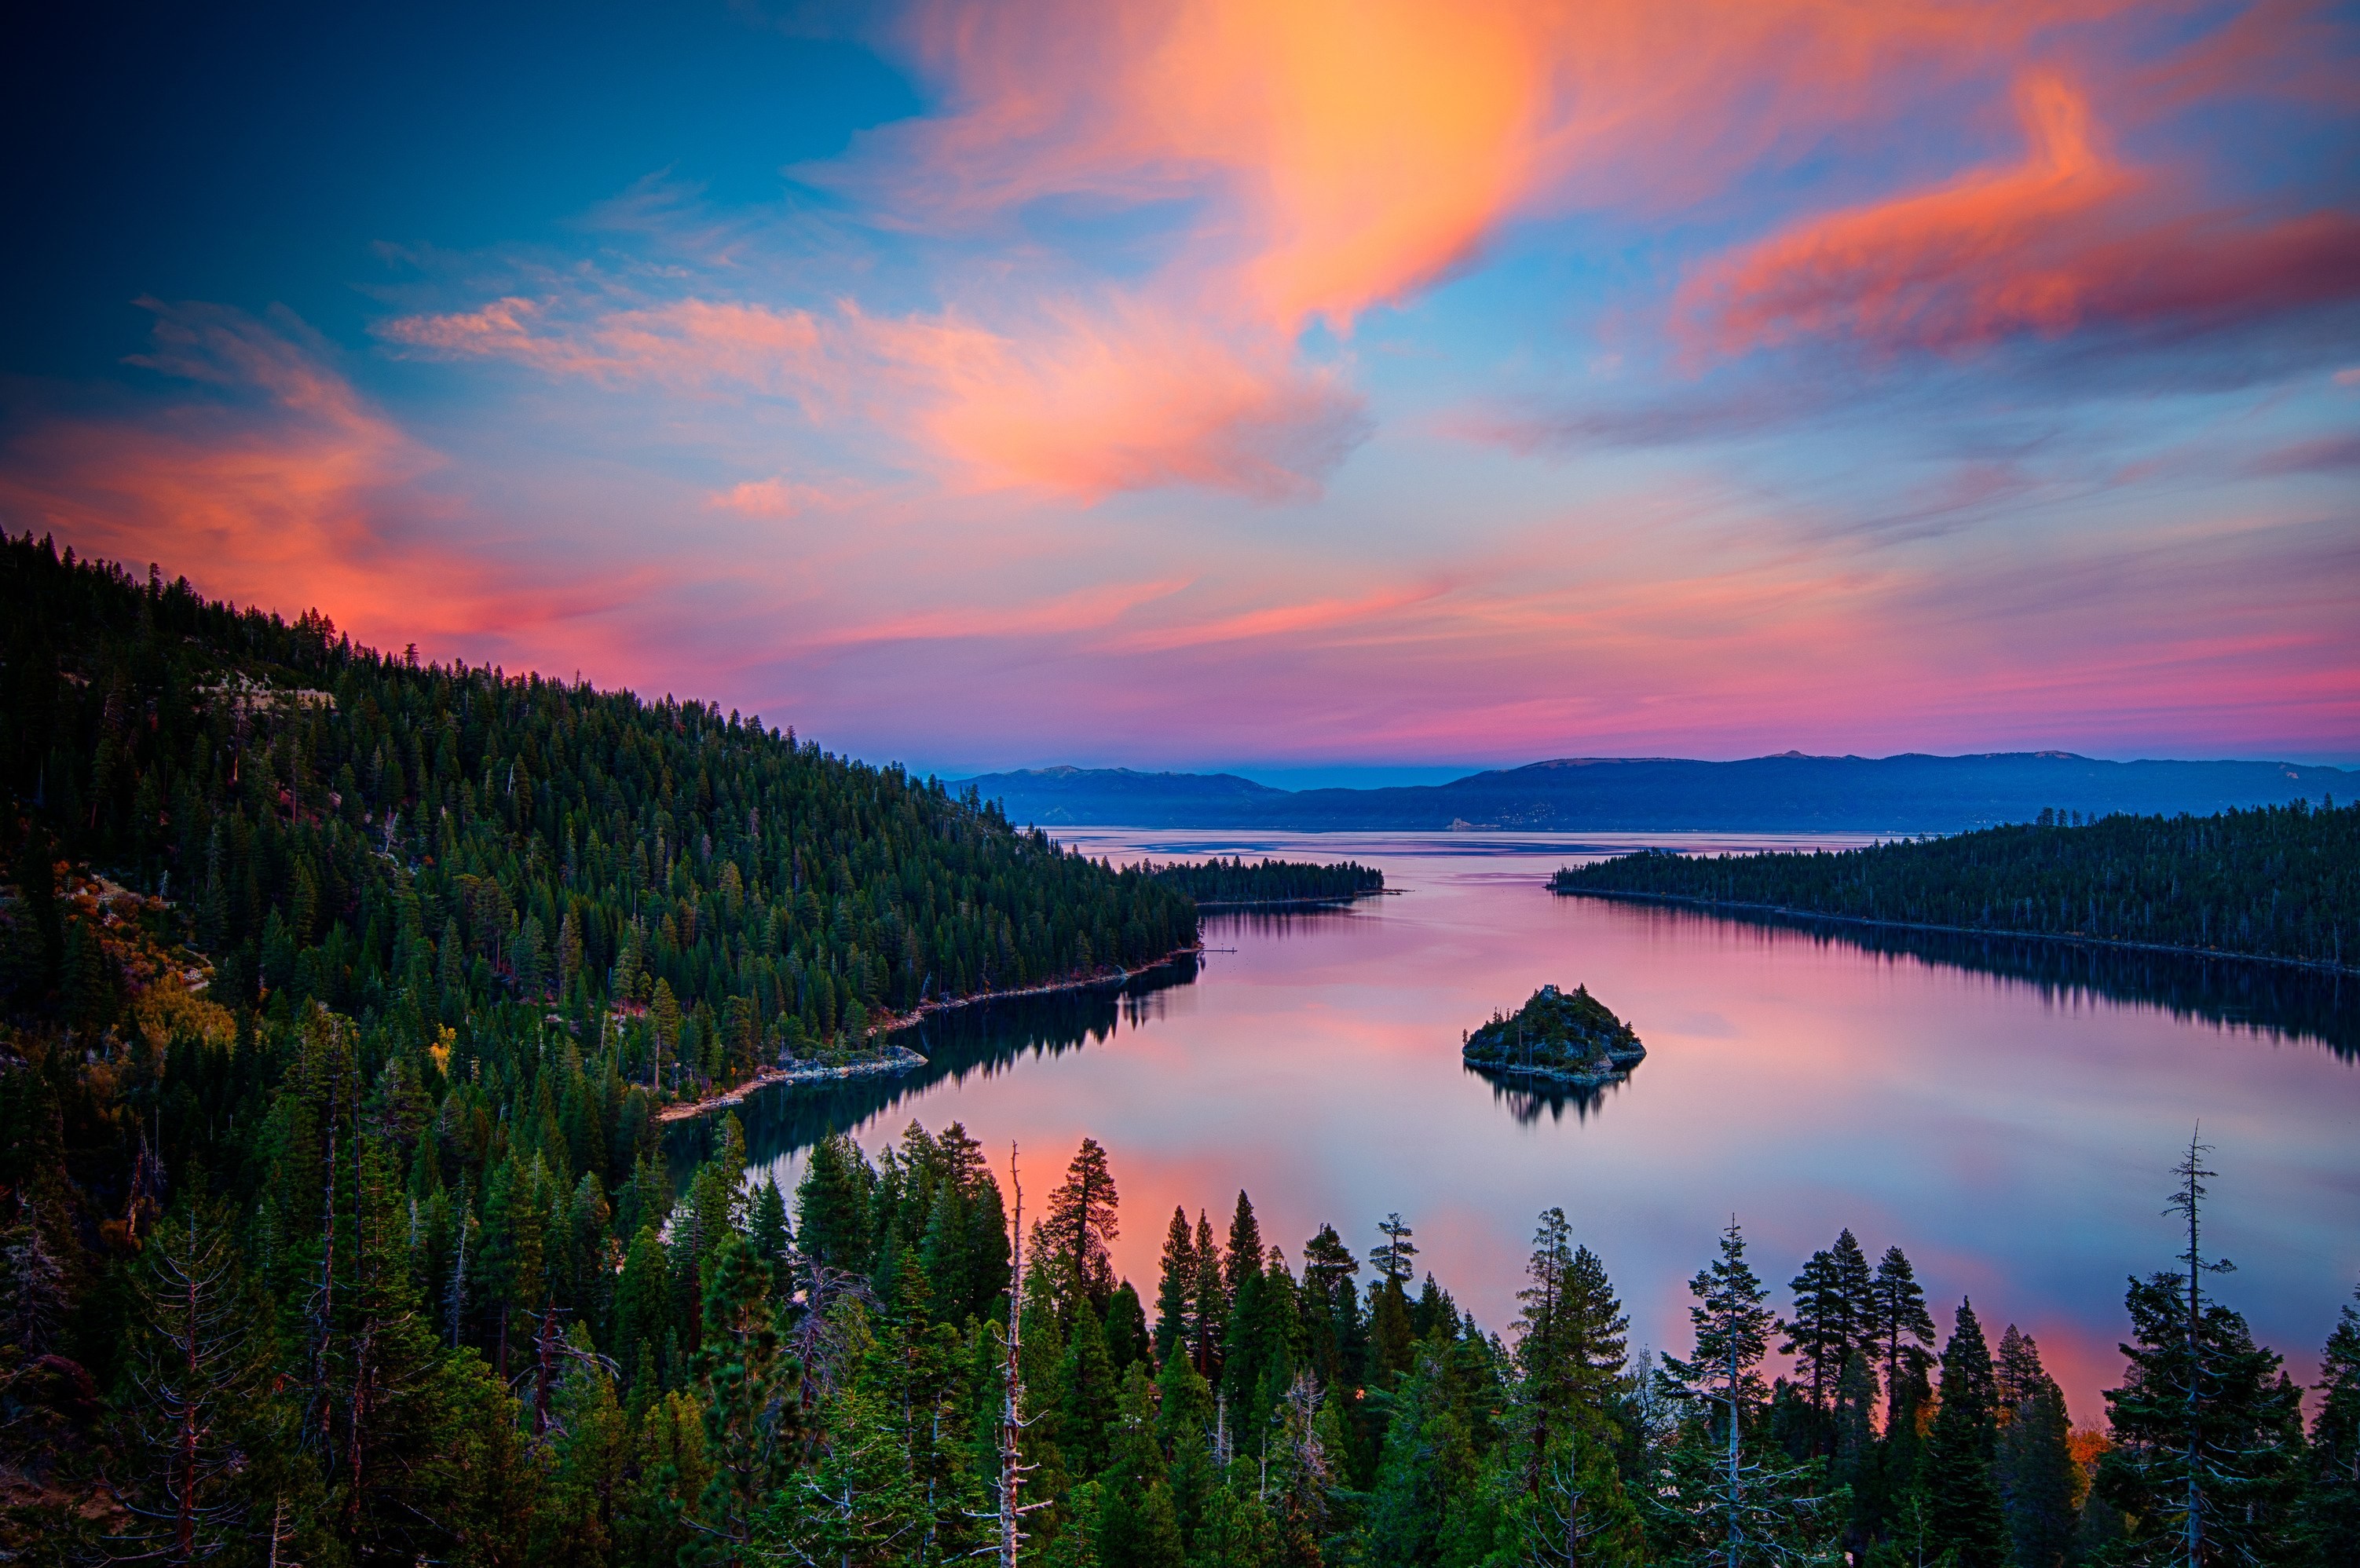 Nếu bạn đang tìm kiếm một nền máy tính mới và đẹp thì hồ Lake Tahoe chính là lựa chọn tuyệt vời. Với bầu trời trong xanh, dãy núi phía xa và mặt hồ xanh ngắt, hình ảnh này sẽ thật sự tuyệt vời trên màn hình máy tính của bạn.